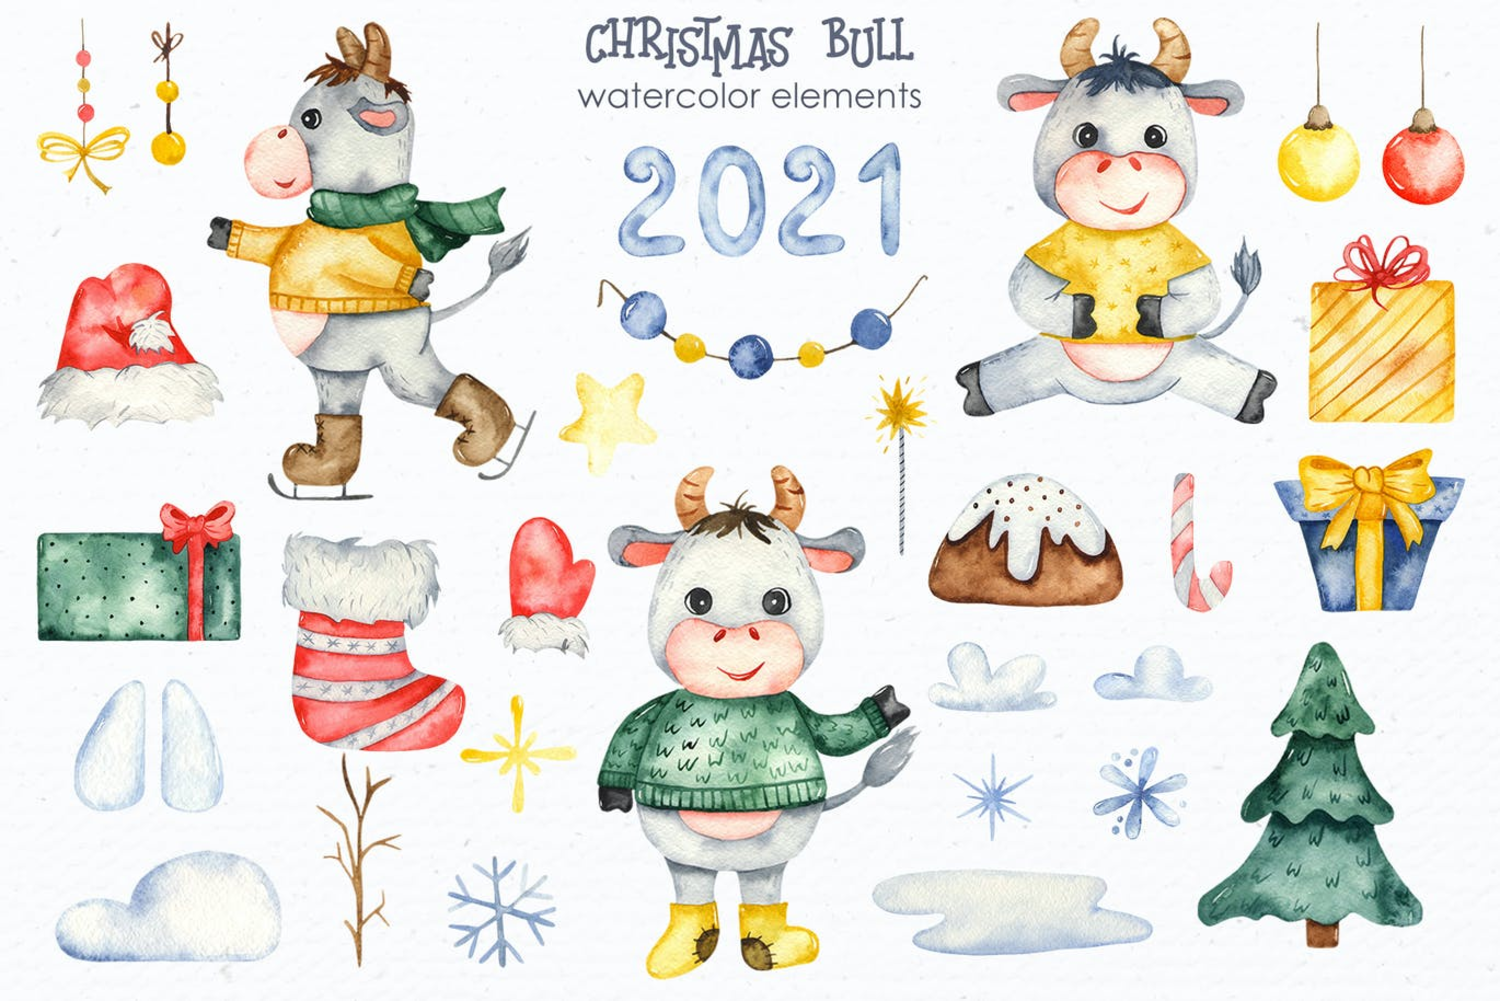 5480 手绘水彩风格的新年圣诞节元素插画大集合